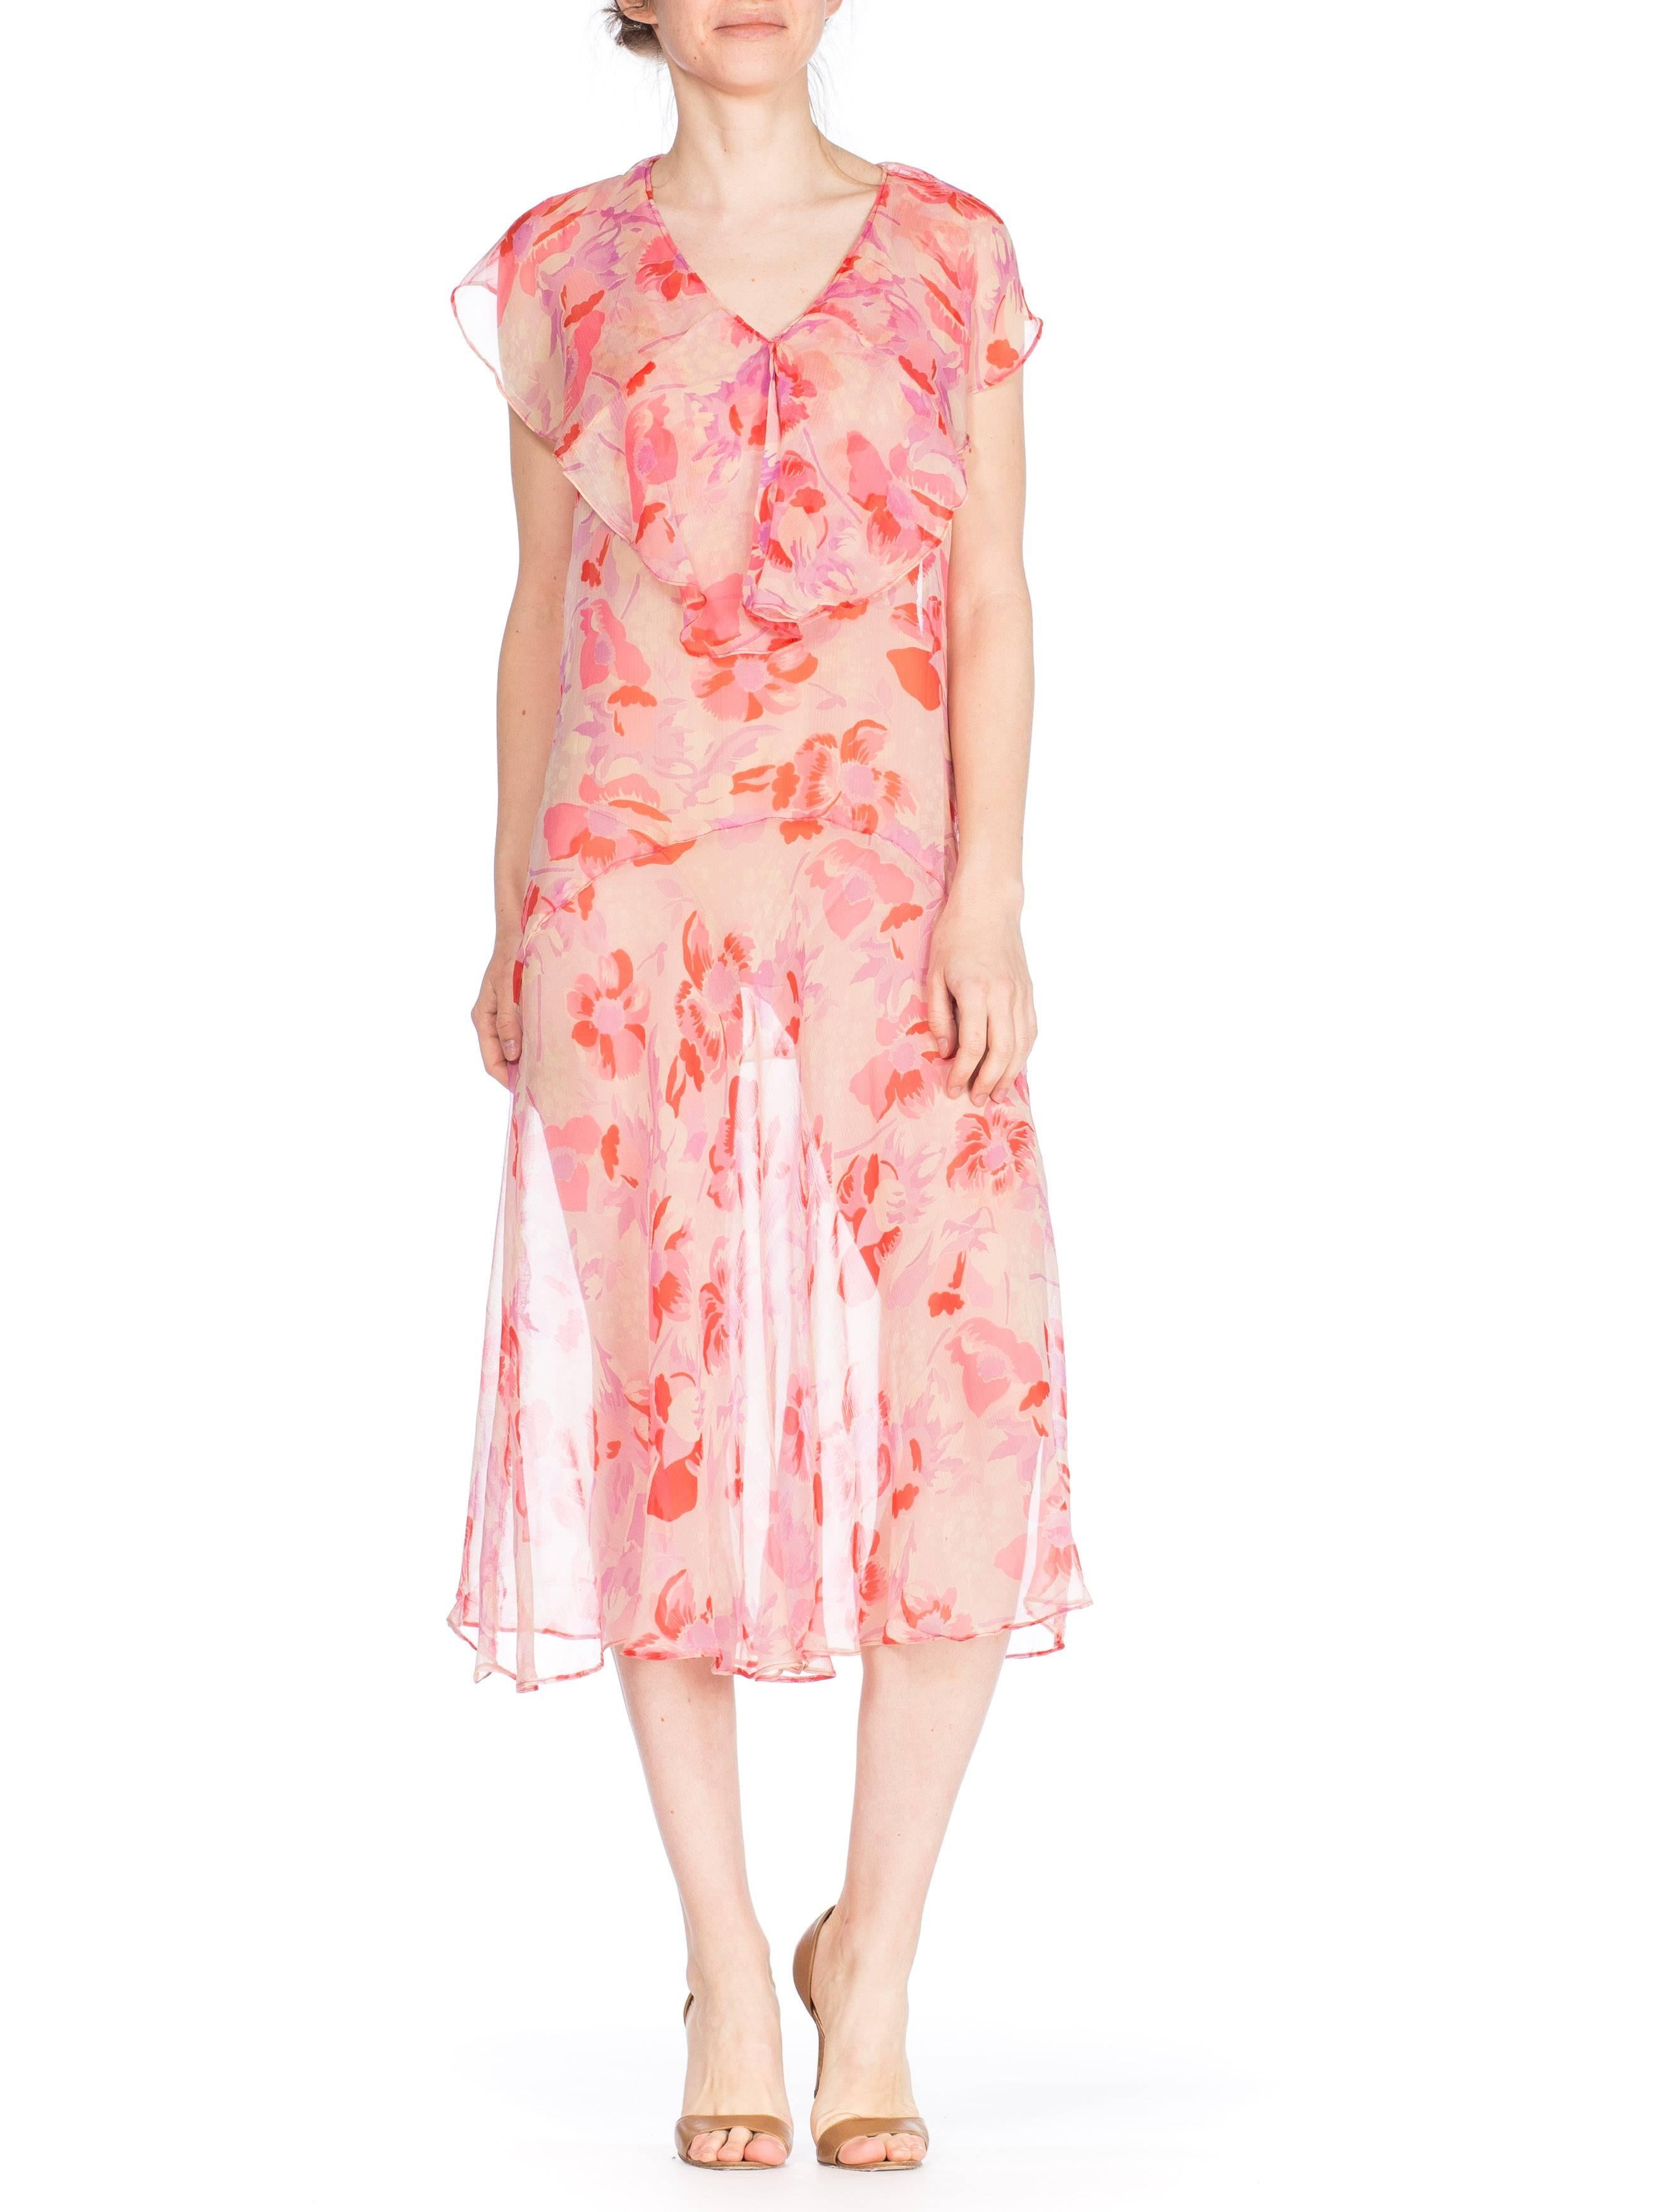 robe pull-over taille basse en mousseline de soie florale rose 1920S avec jupe volantée en biais